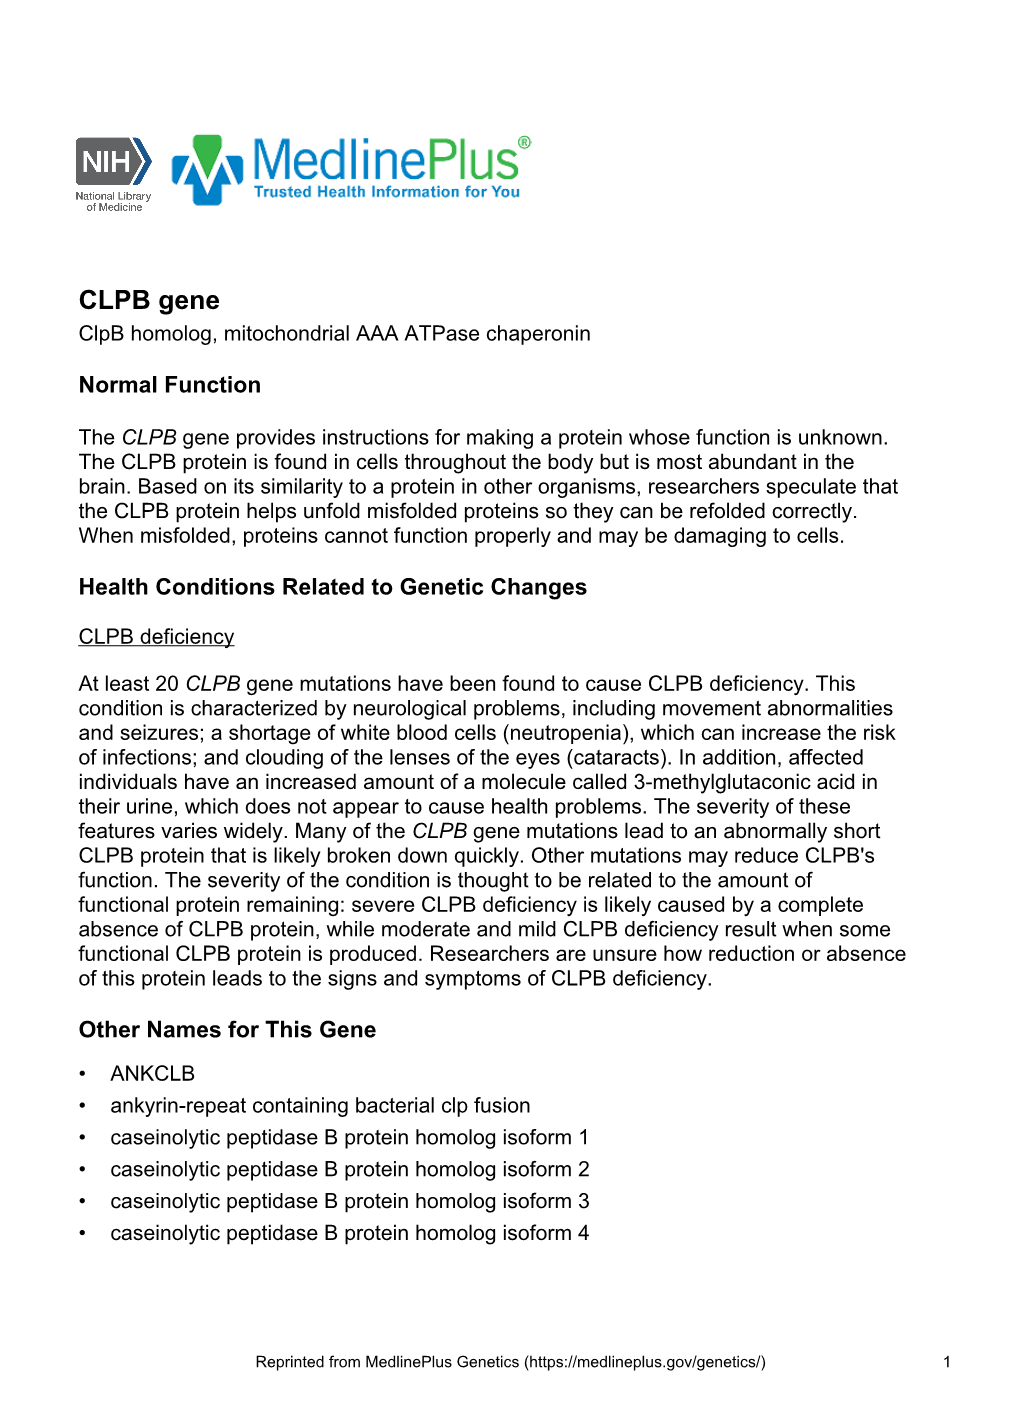 CLPB Gene Clpb Homolog, Mitochondrial AAA Atpase Chaperonin